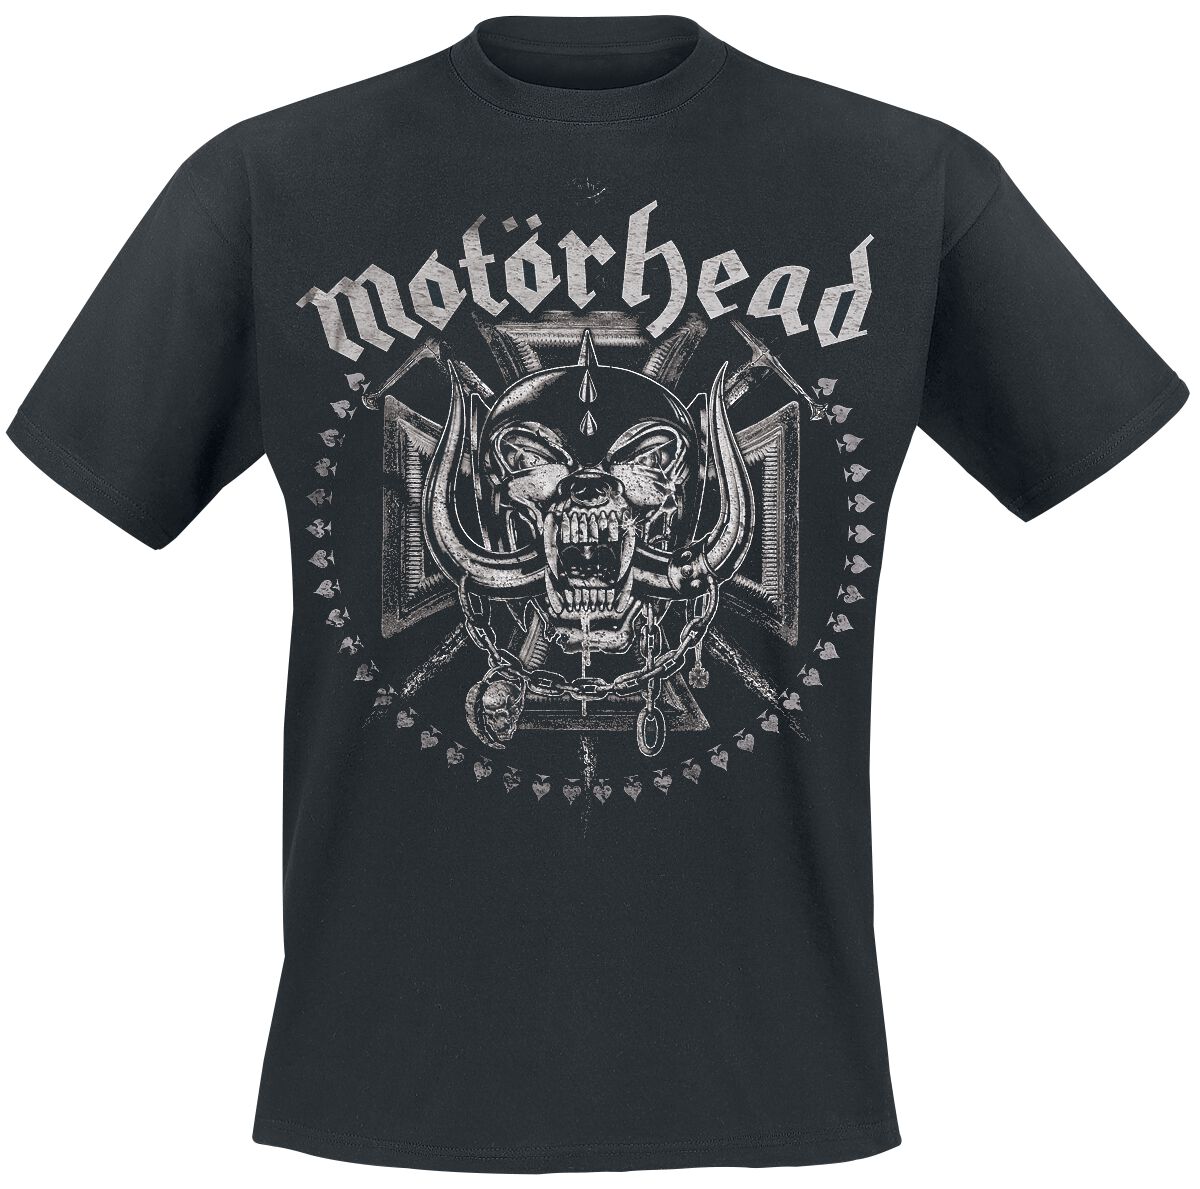 Motörhead T-Shirt - Iron Cross Swords - M bis XXL - für Männer - Größe M - schwarz  - EMP exklusives Merchandise!